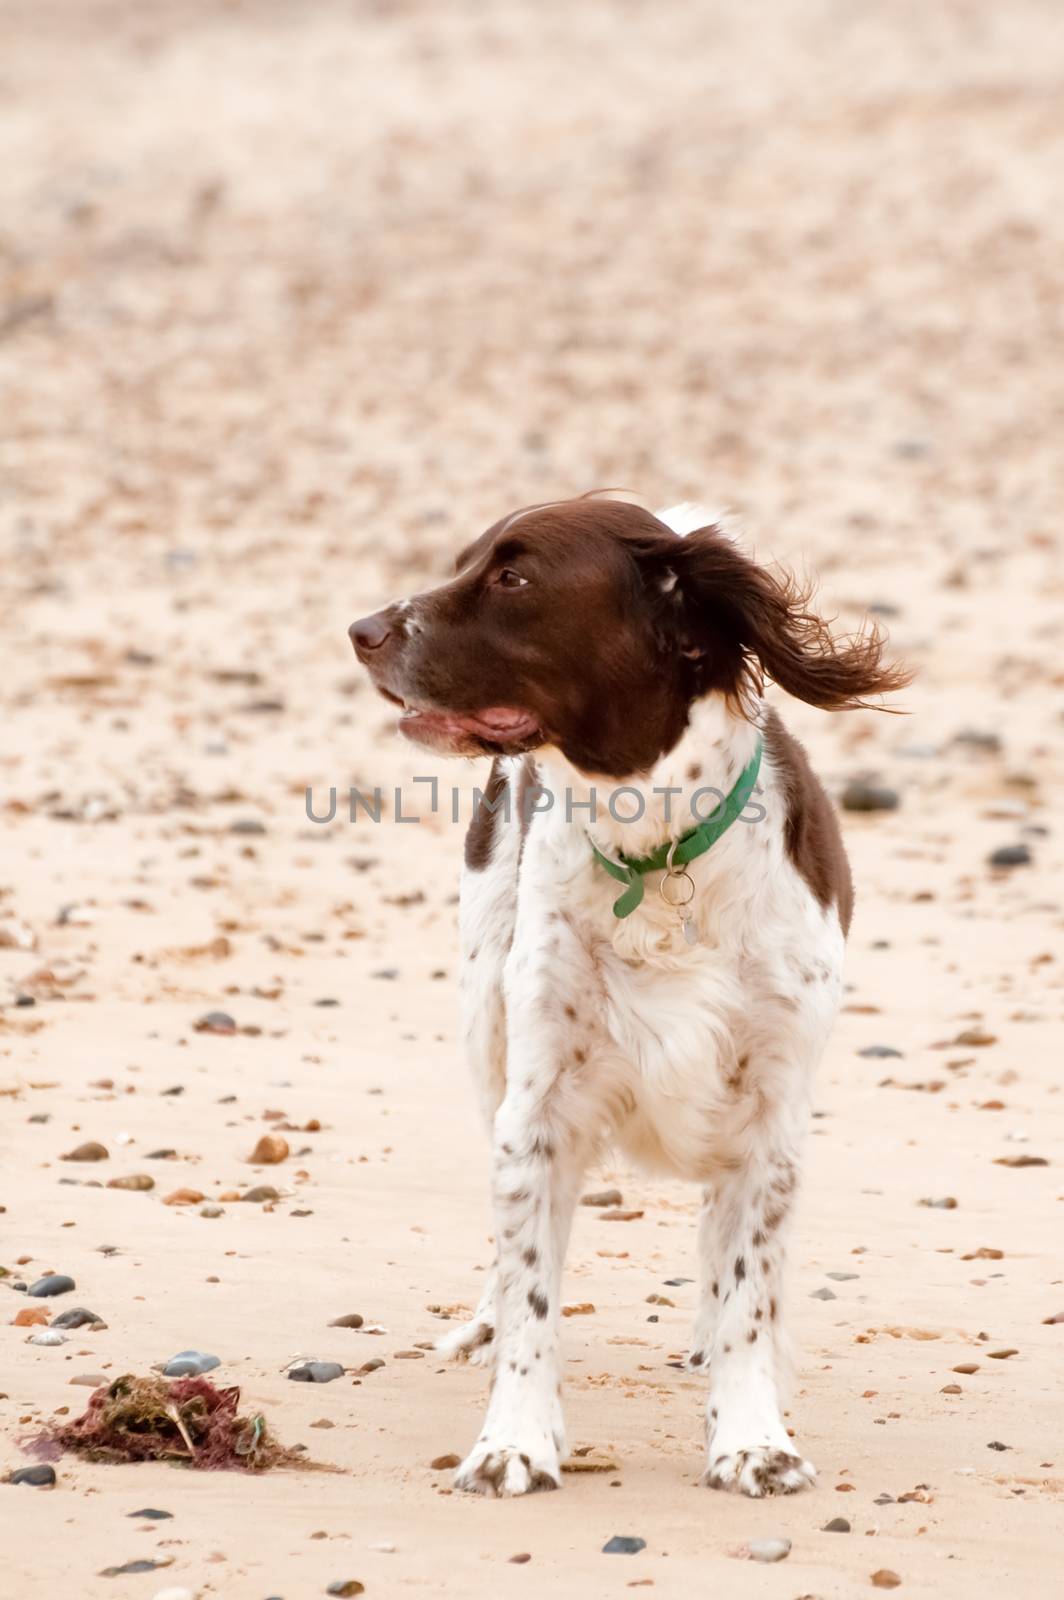 springer spaniel dog on a stony beach